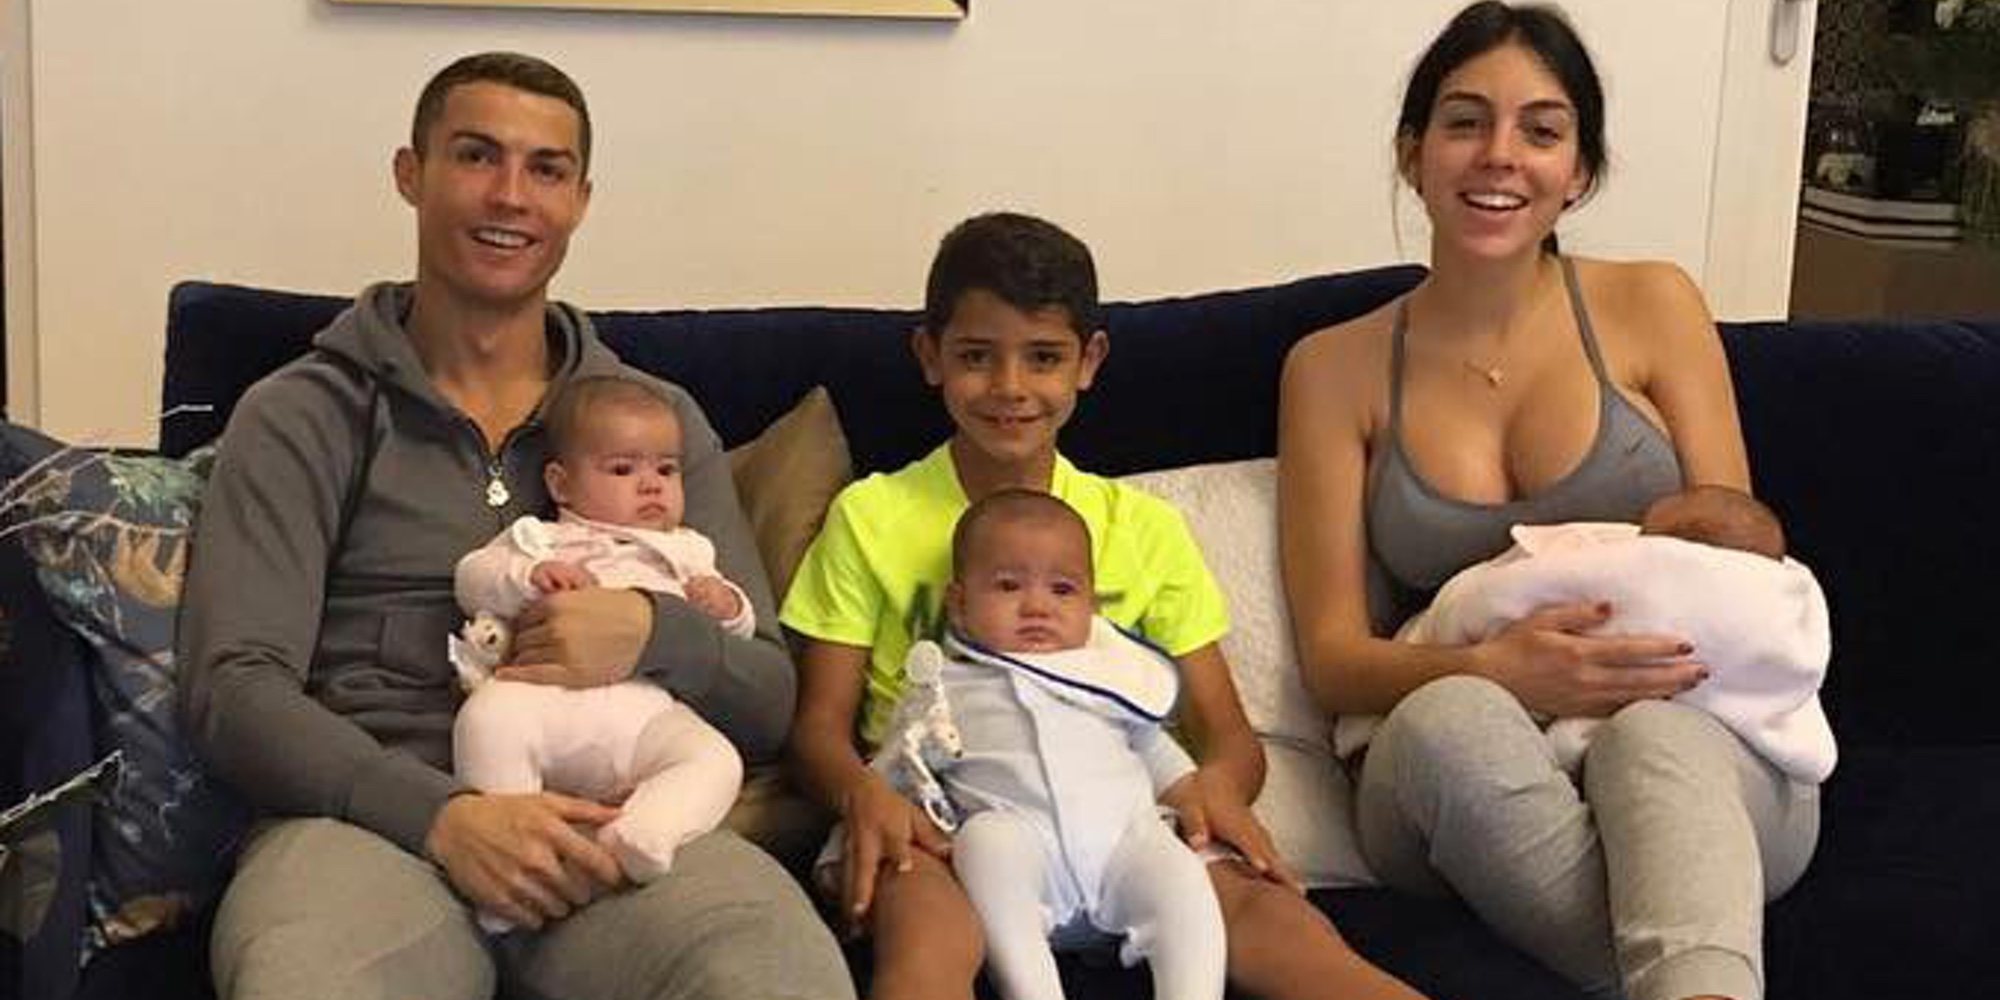 Cristiano Ronaldo celebra el primer cumpleaños de sus mellizos Eva y Mateo en la distancia